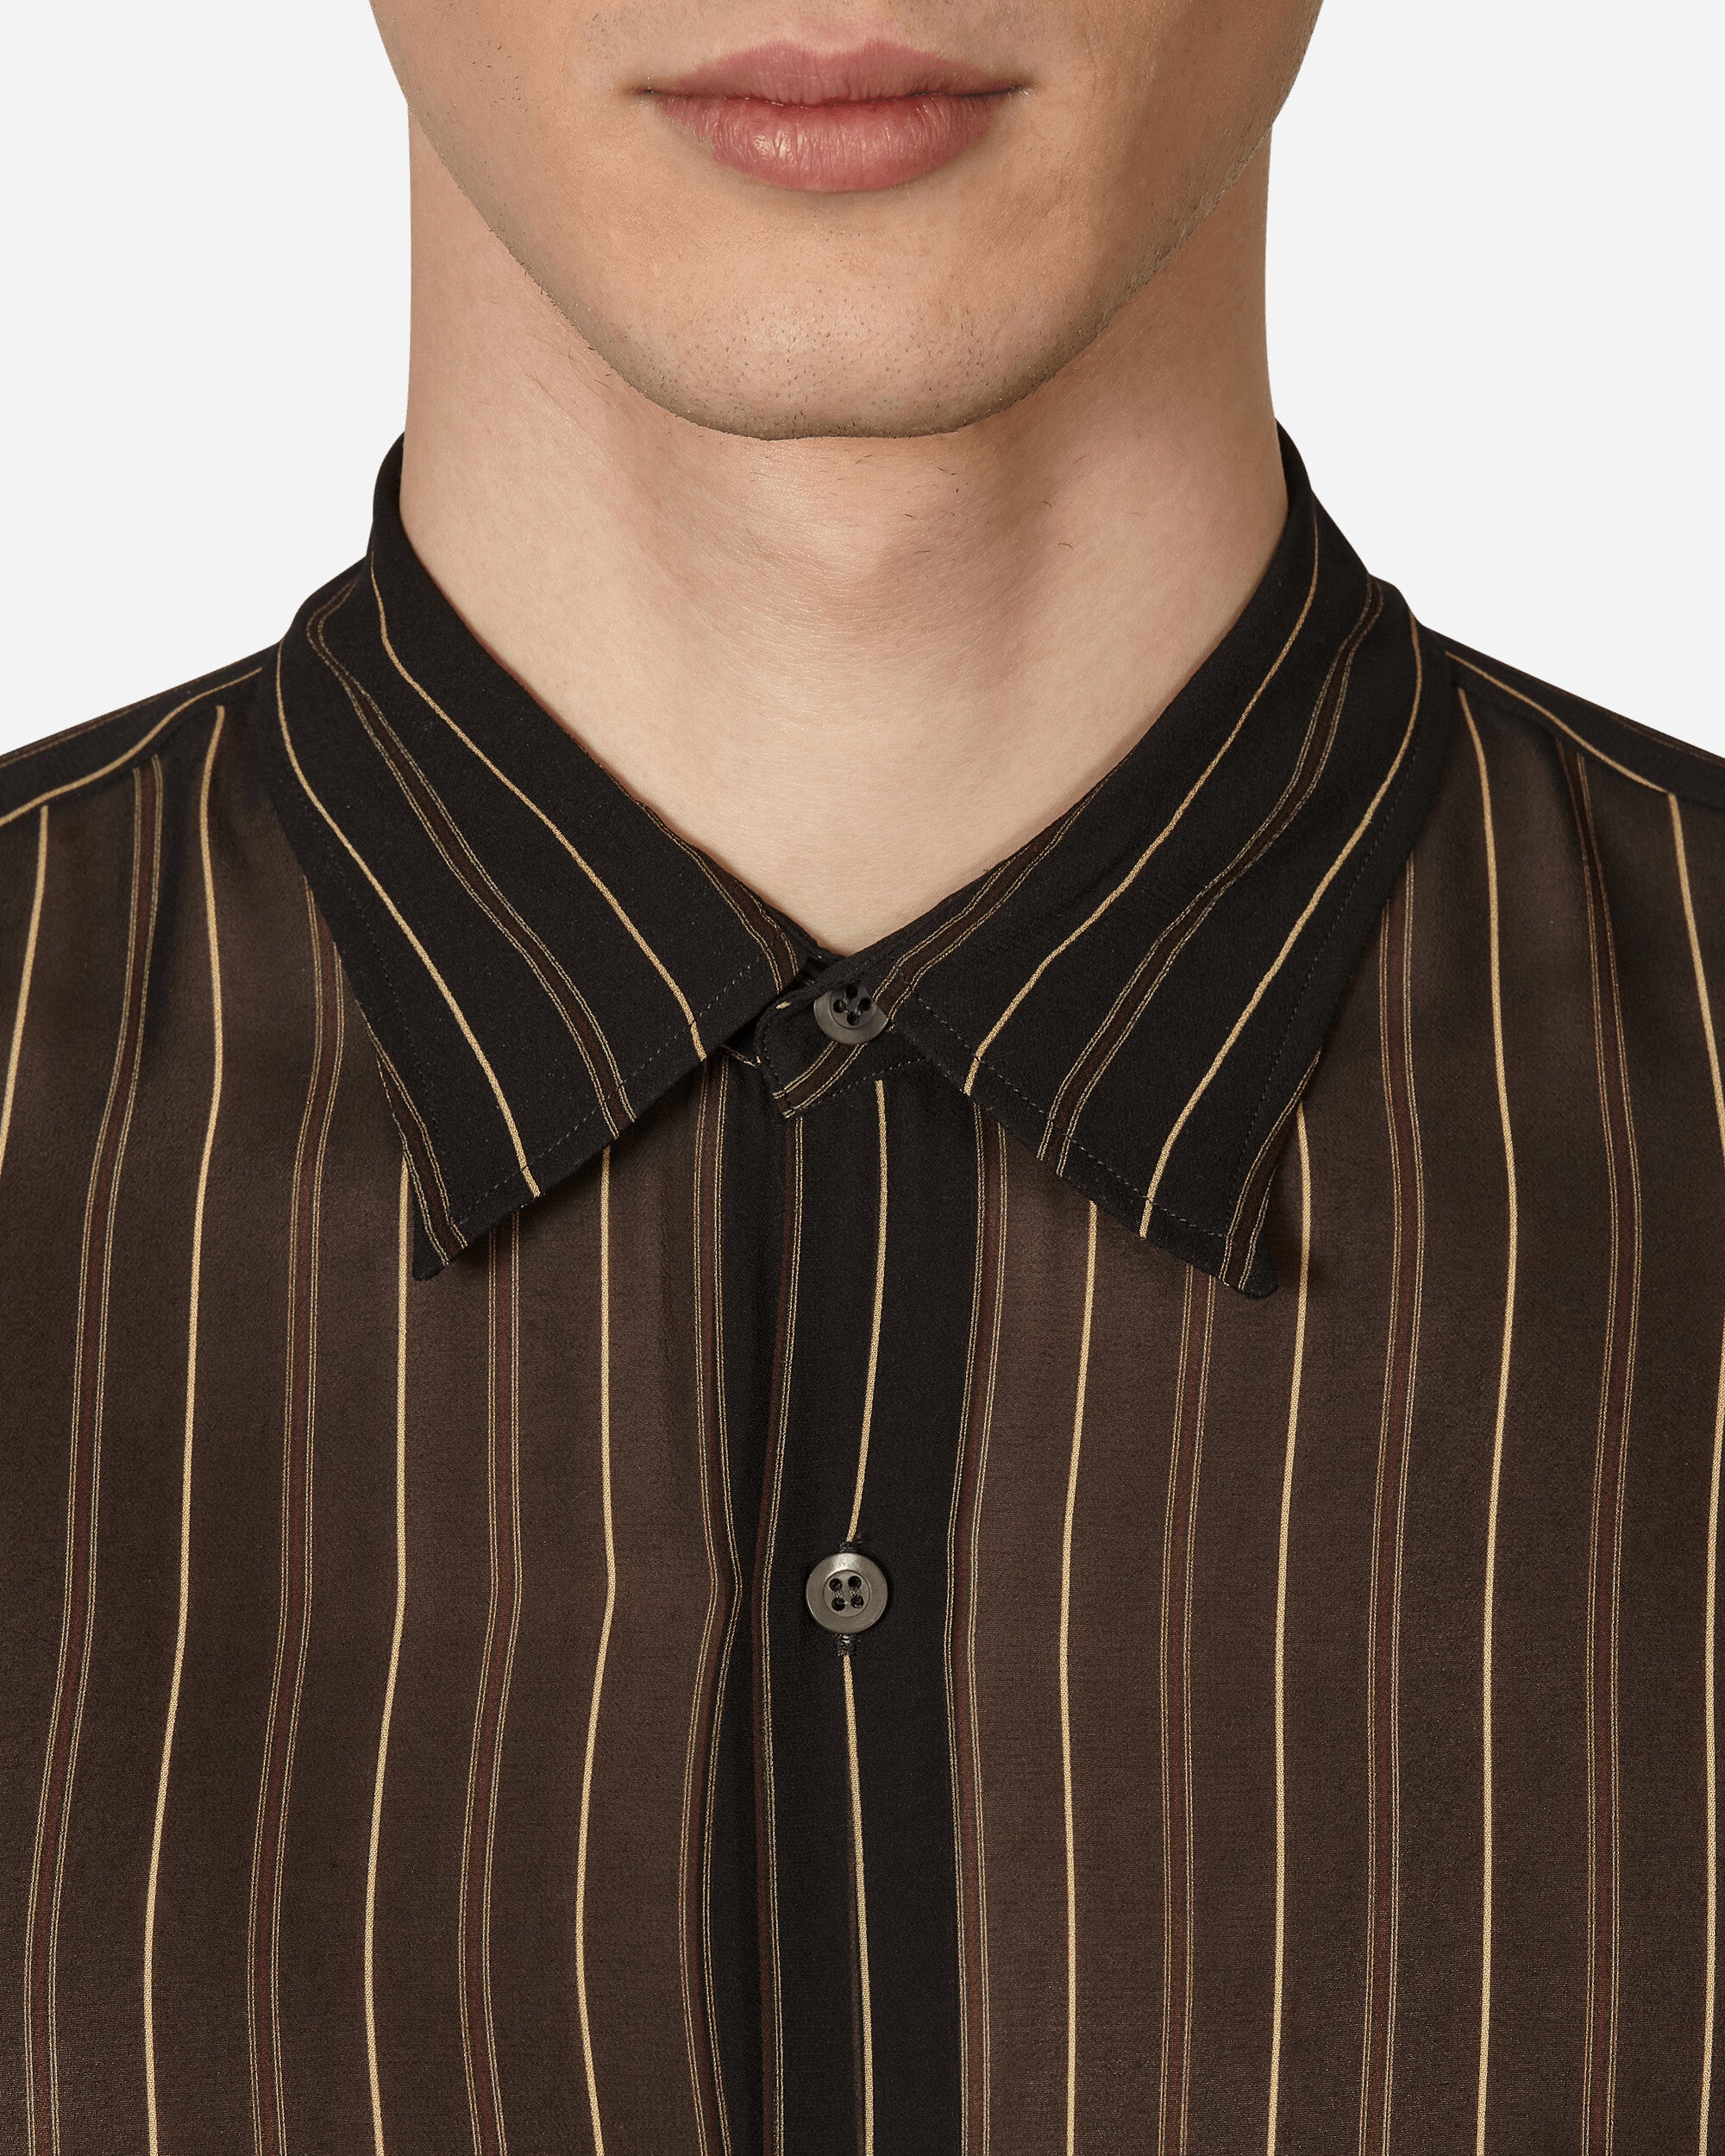 Dries Van Noten Cassidye Shirt Black Shirts Longsleeve Shirt 231-020708-6137 900